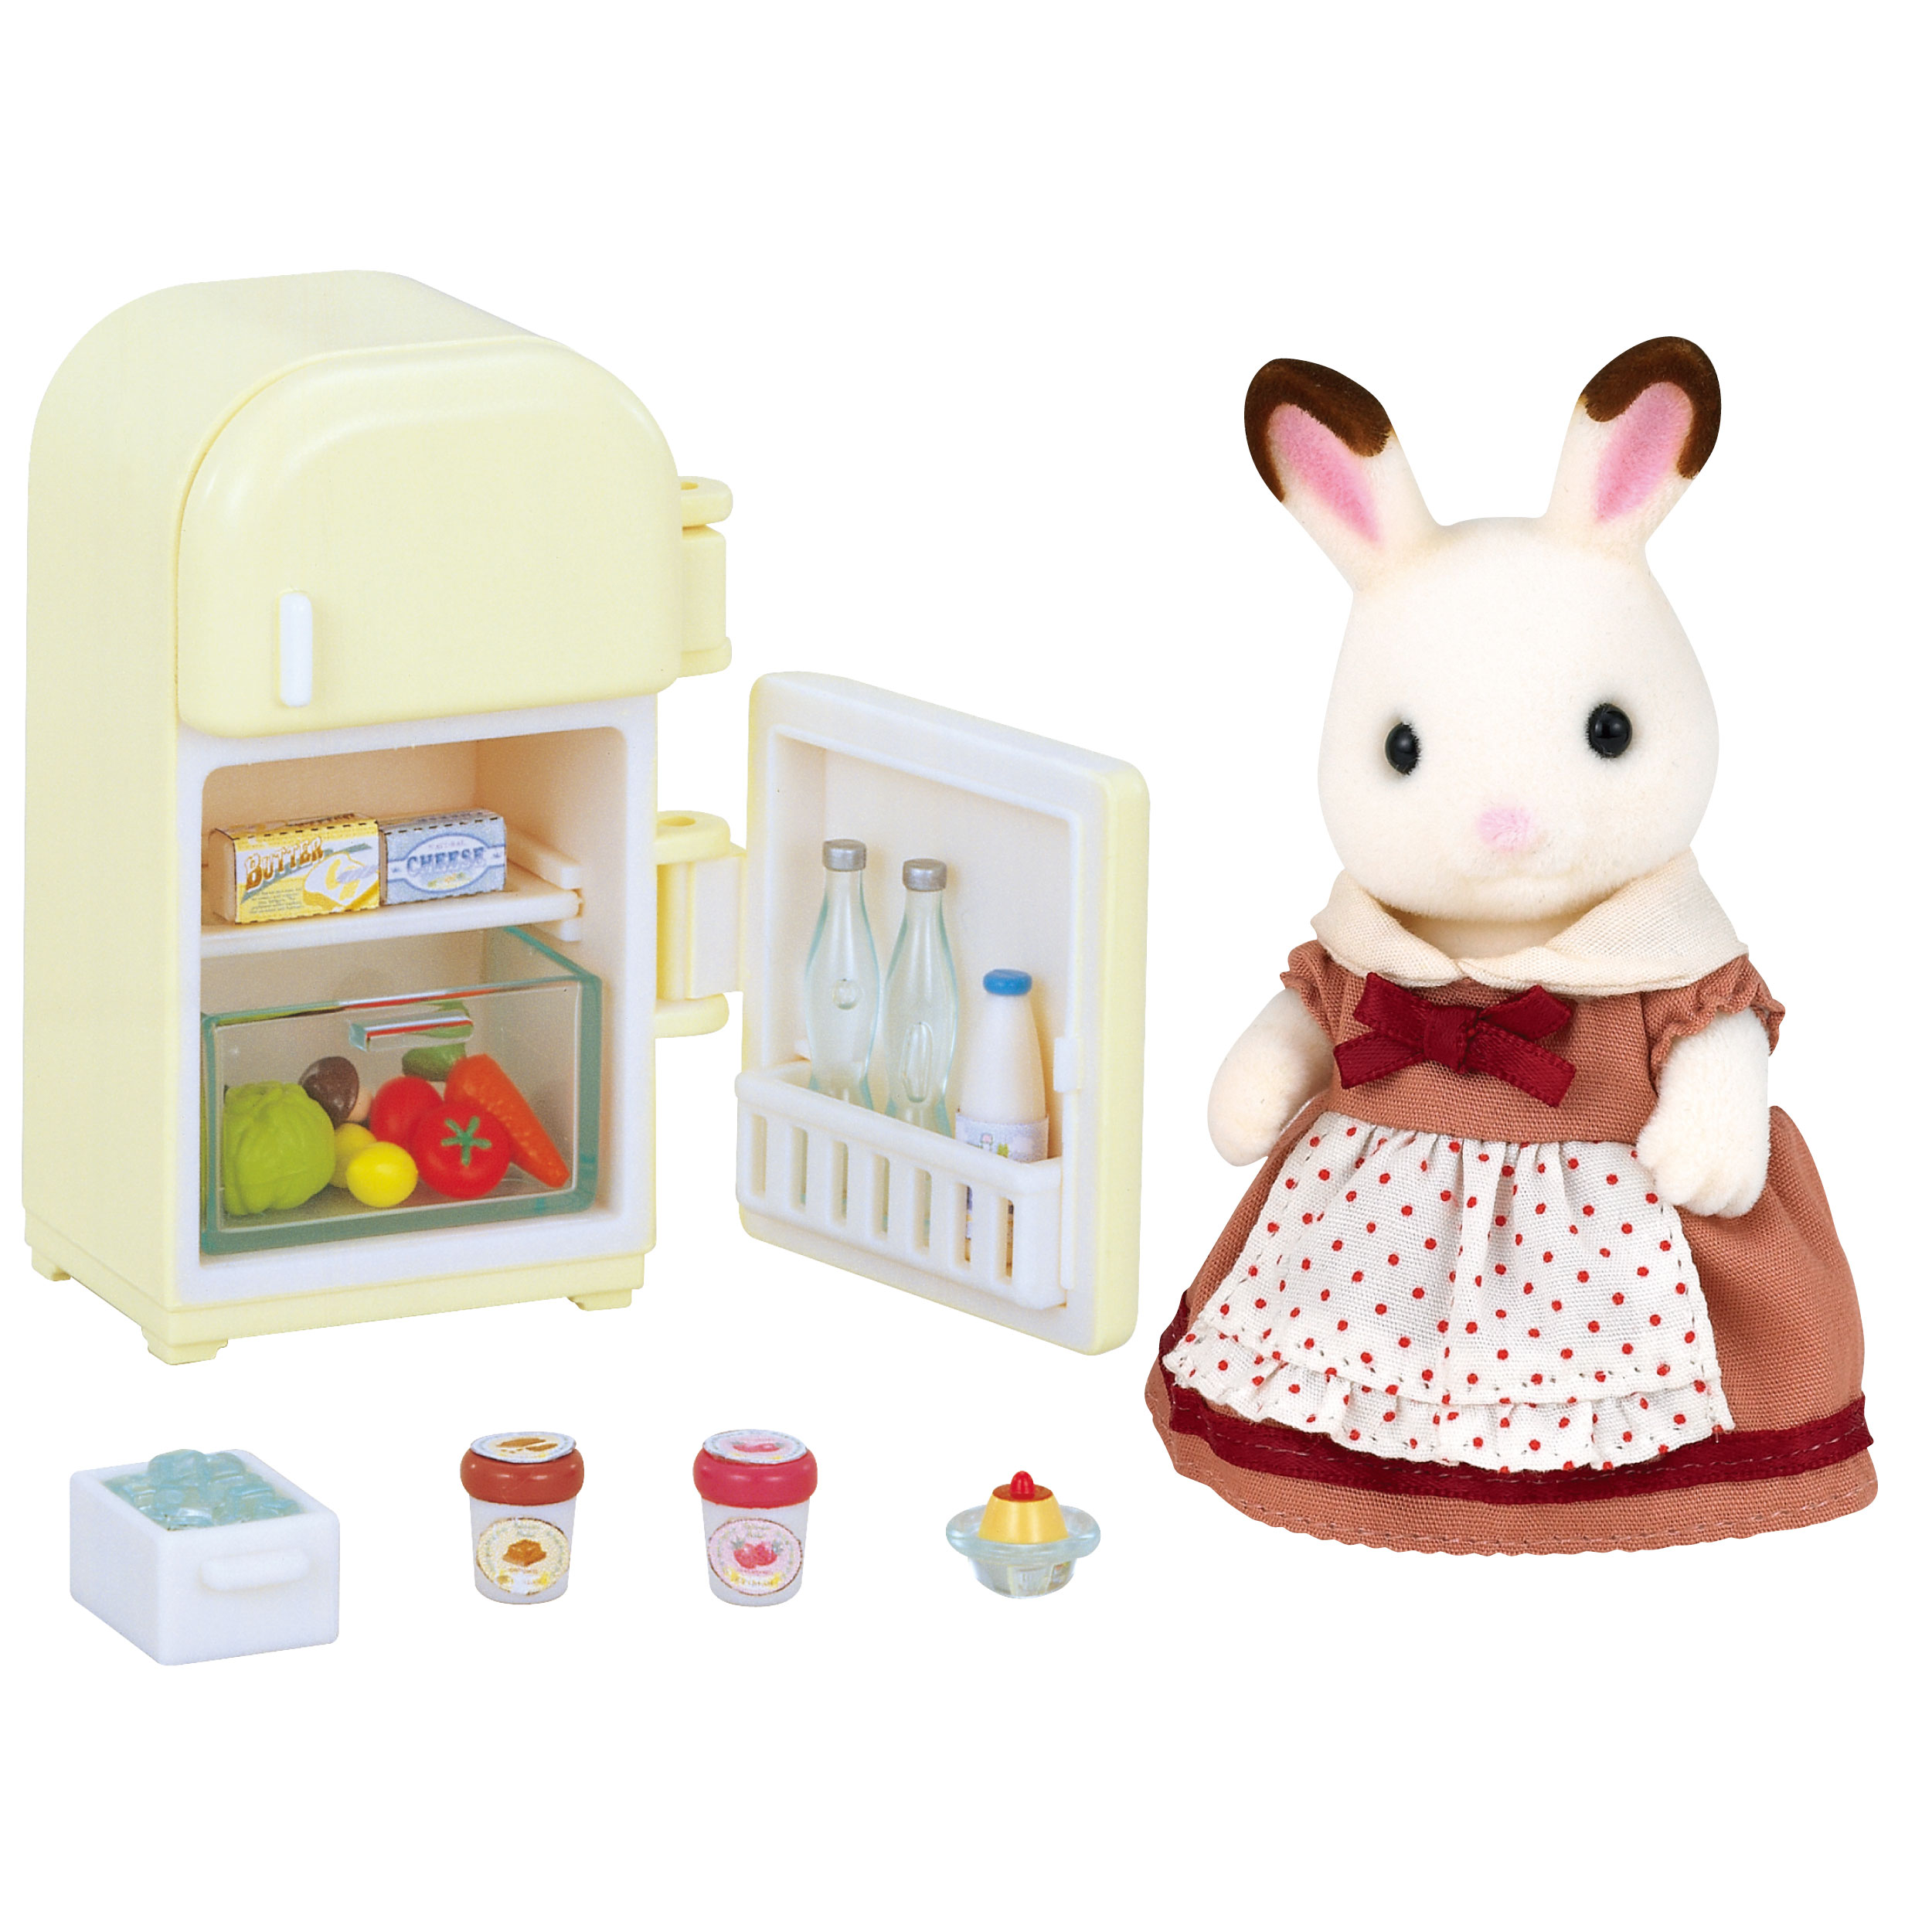 ショコラウサギのお母さん・家具セット / 家具と人形セット - シルバニアファミリーオンラインショップ